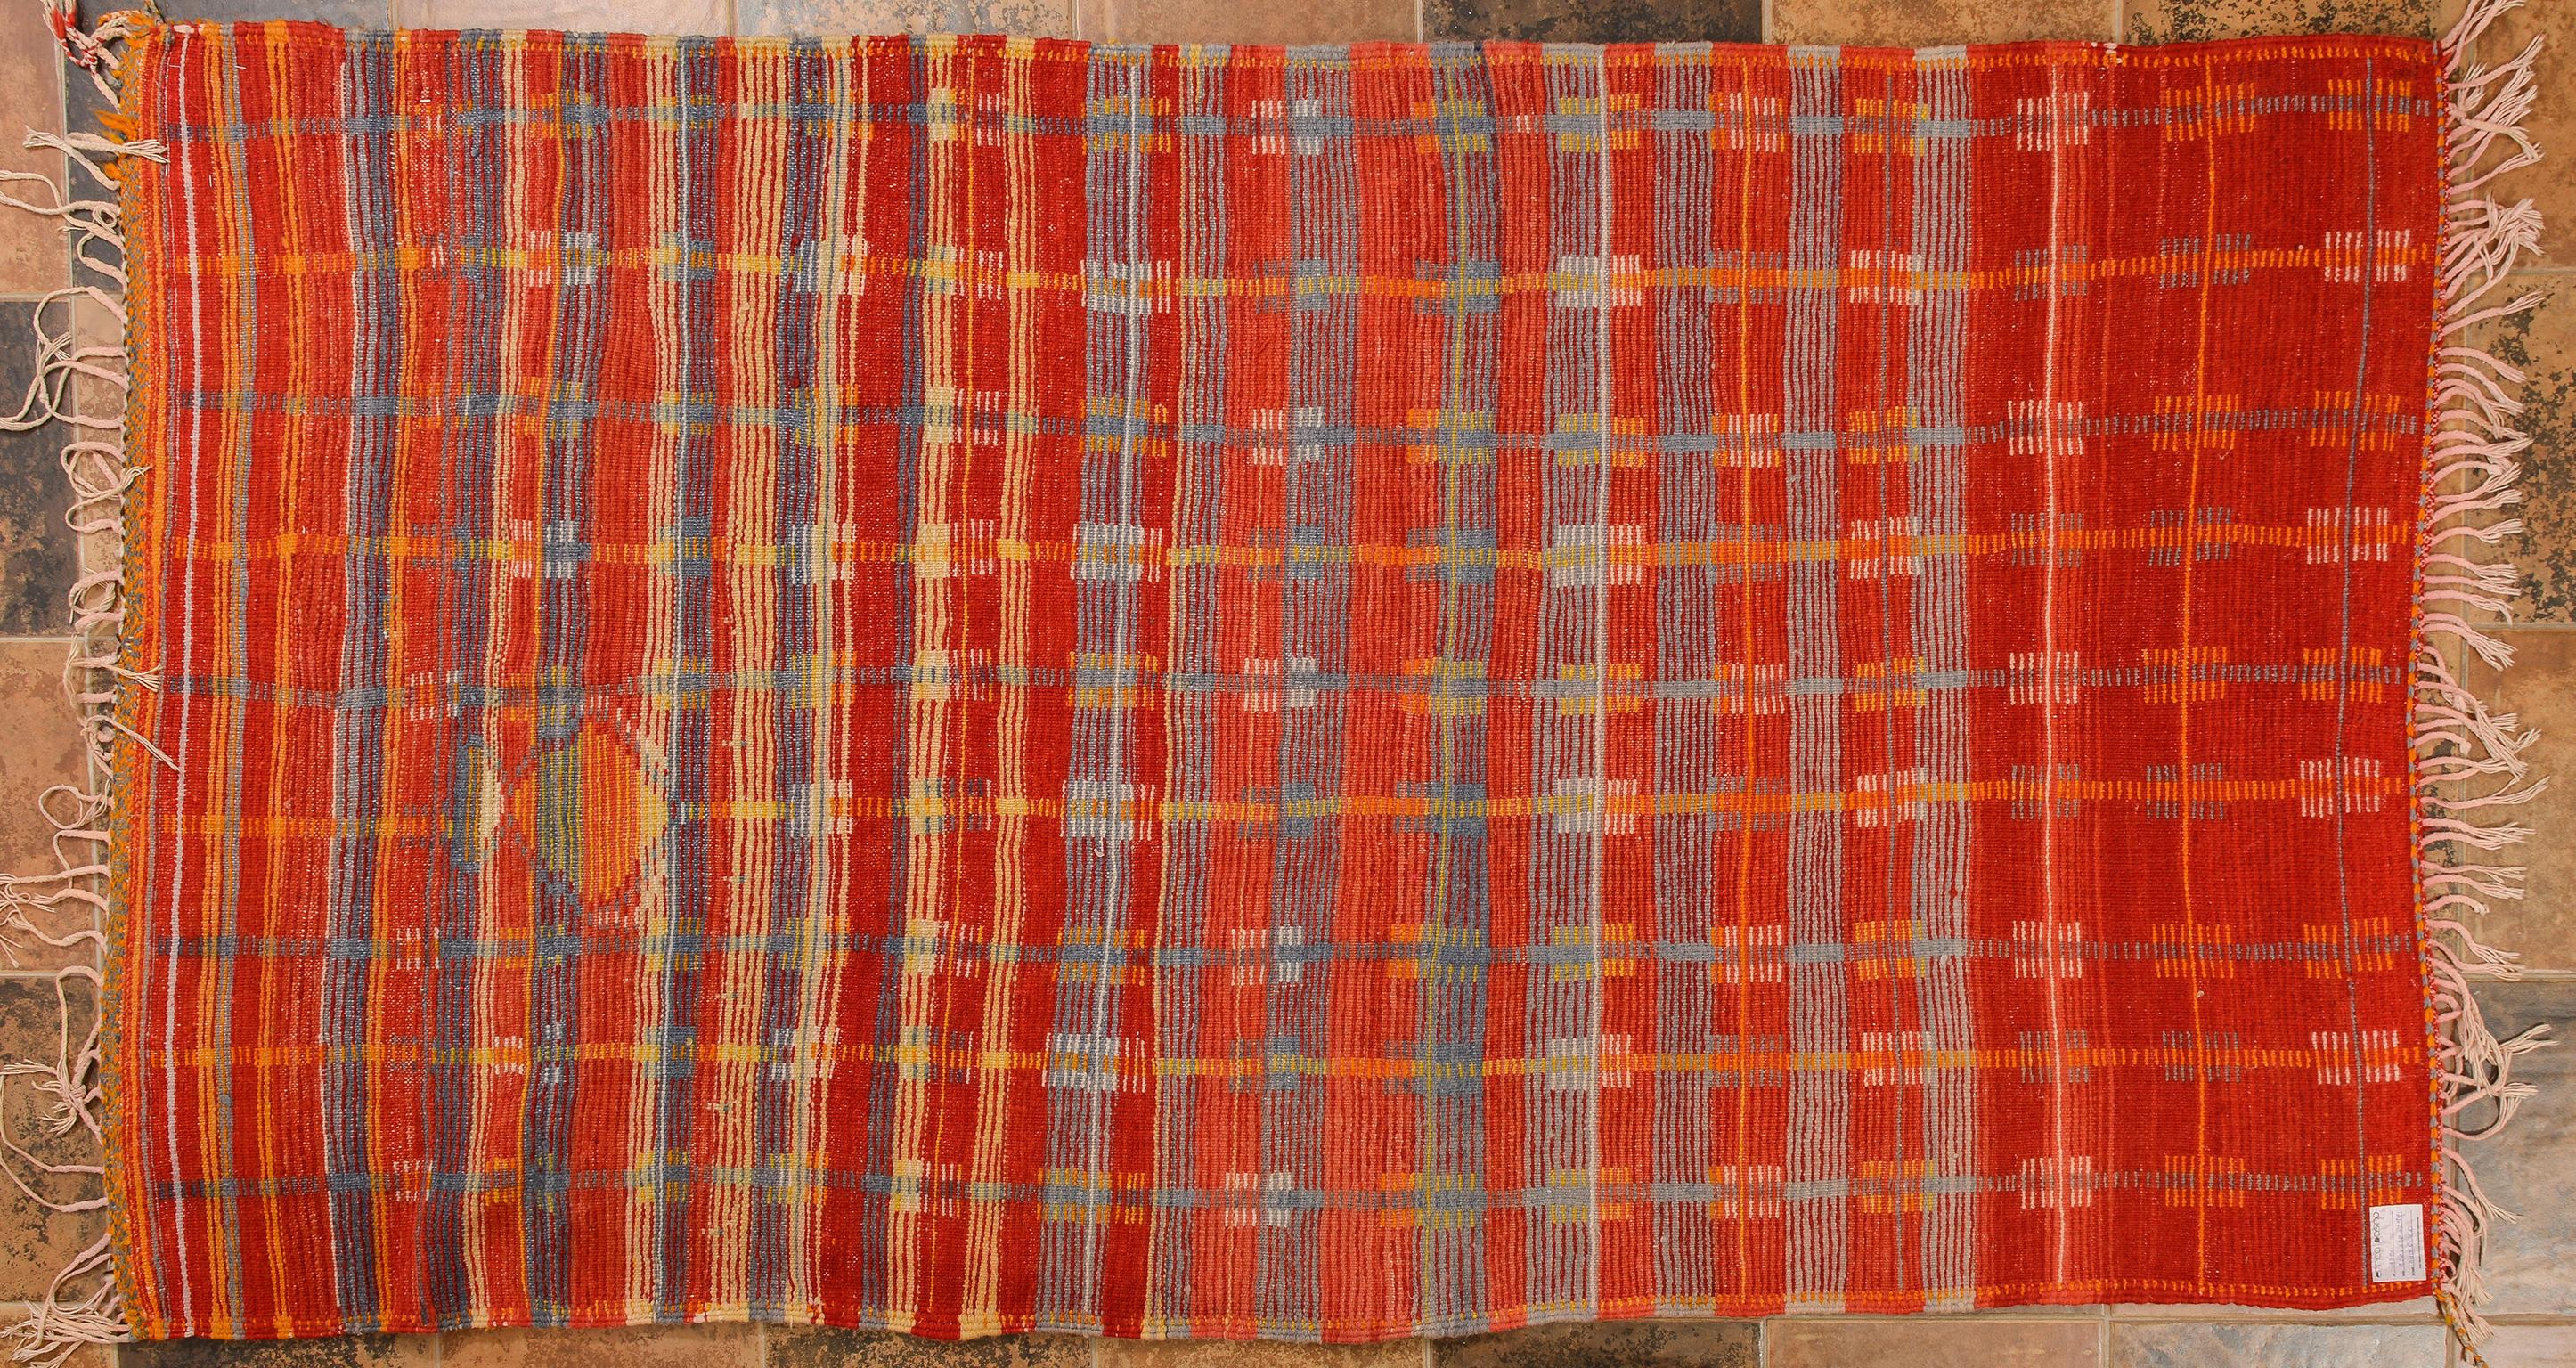 Marokkanischer Teppich Ait Tamassine _
Schöner und seltener Teppich, Teil einer Collection: Fachwerkdesign mit leuchtenden Farben.
Zusammen mit einem anderen marokkanischen Teppich wird er zu einem großen Teppich.
Meine Teppiche lassen sich von